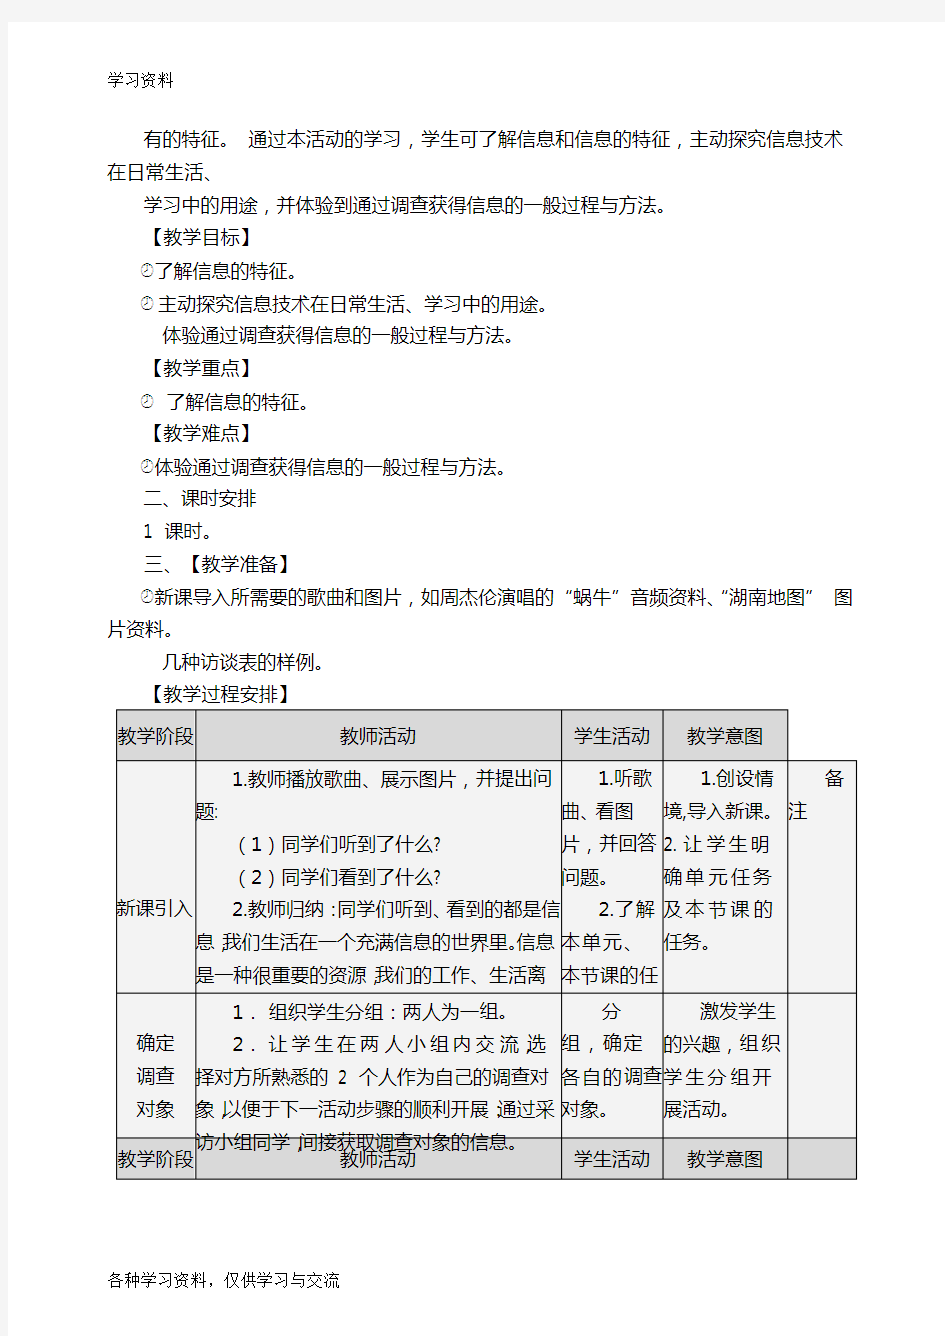 初中七年级上册信息技术教案-(上海科教版)教学教材